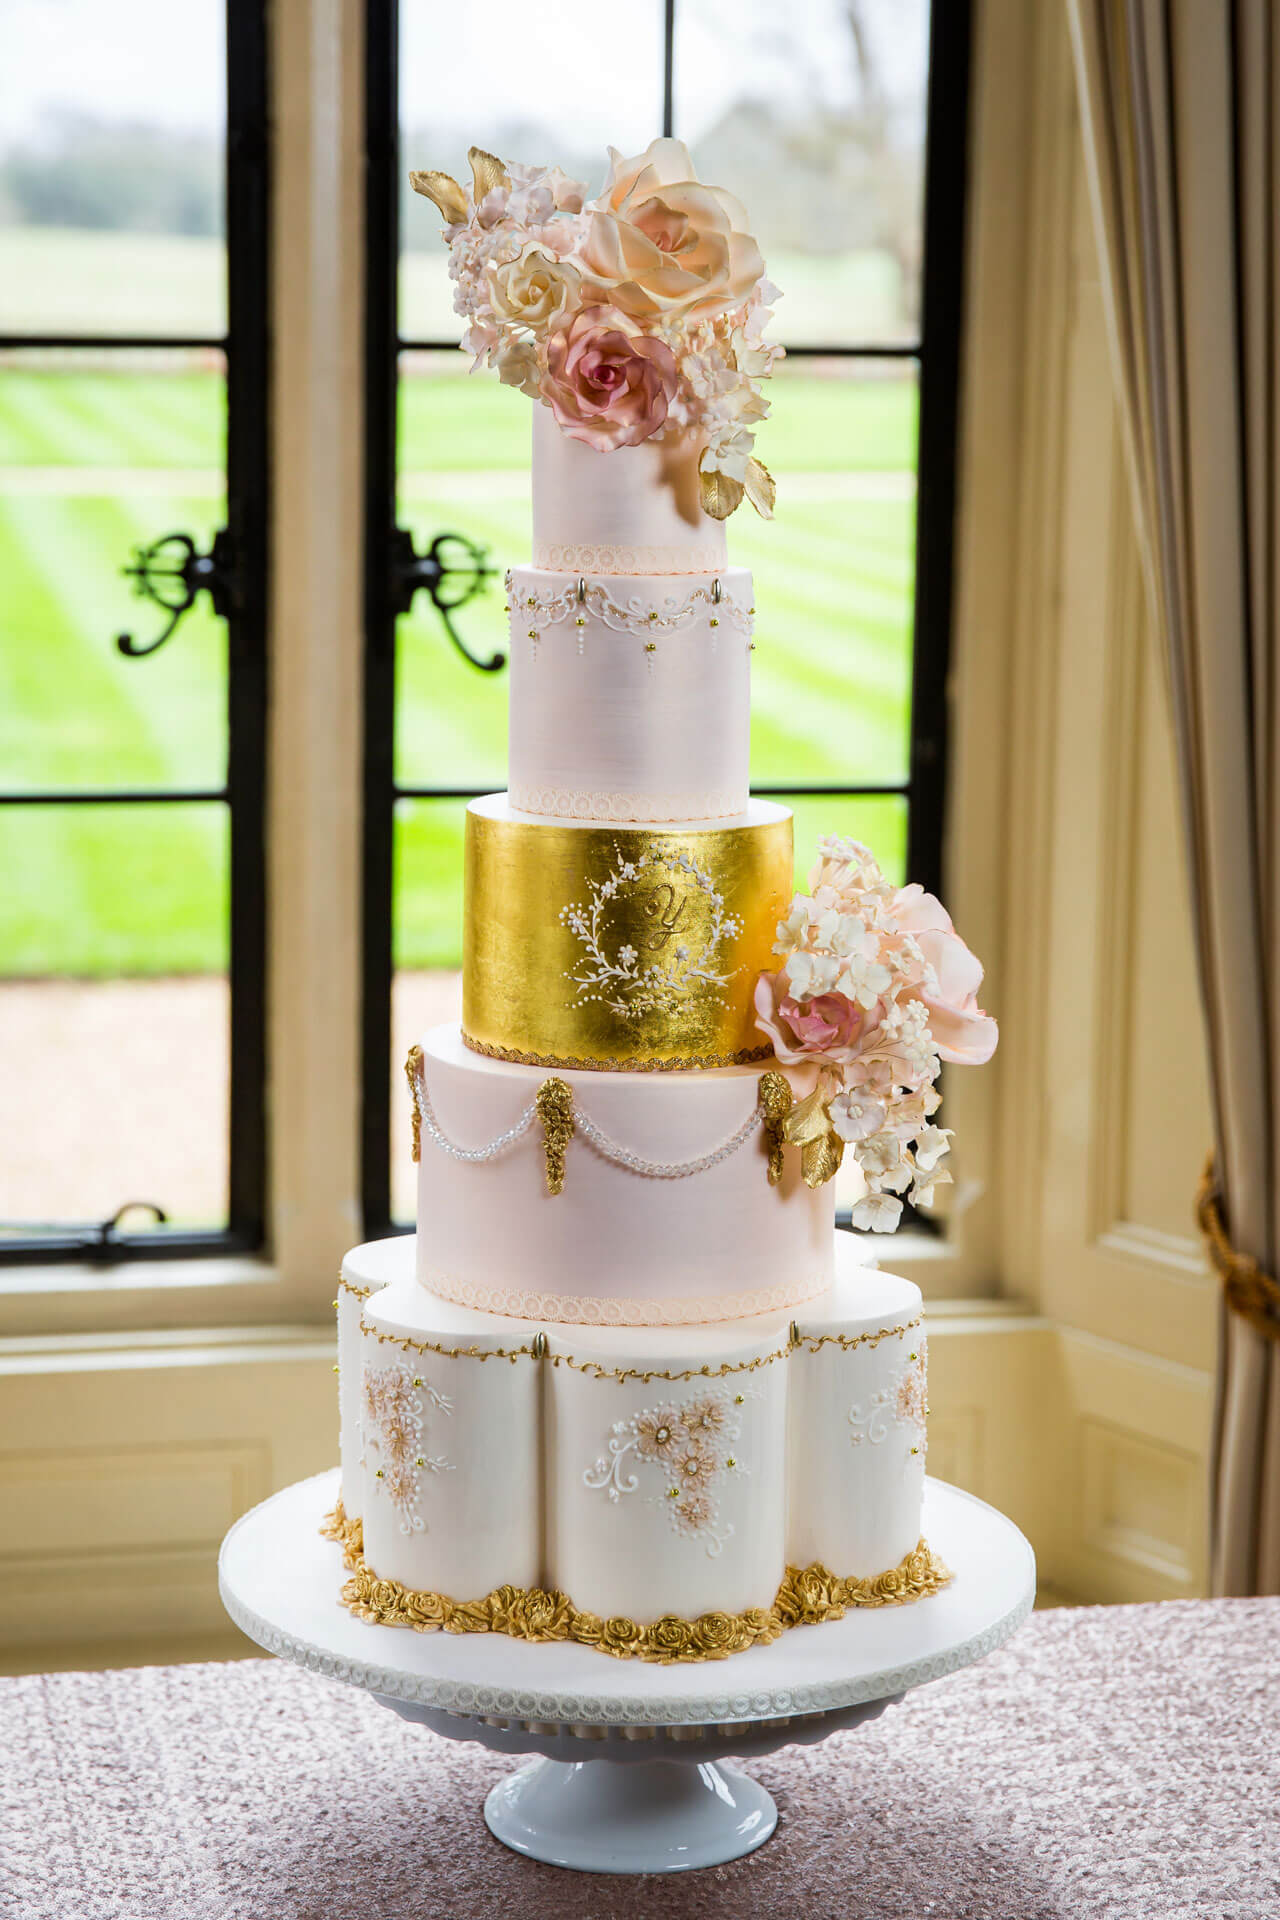 Custom Luxury Wedding Cakes By Yevnig The Evelina The Elvetham Hotel Jacques Lloyd Photography 160208 The Evelina